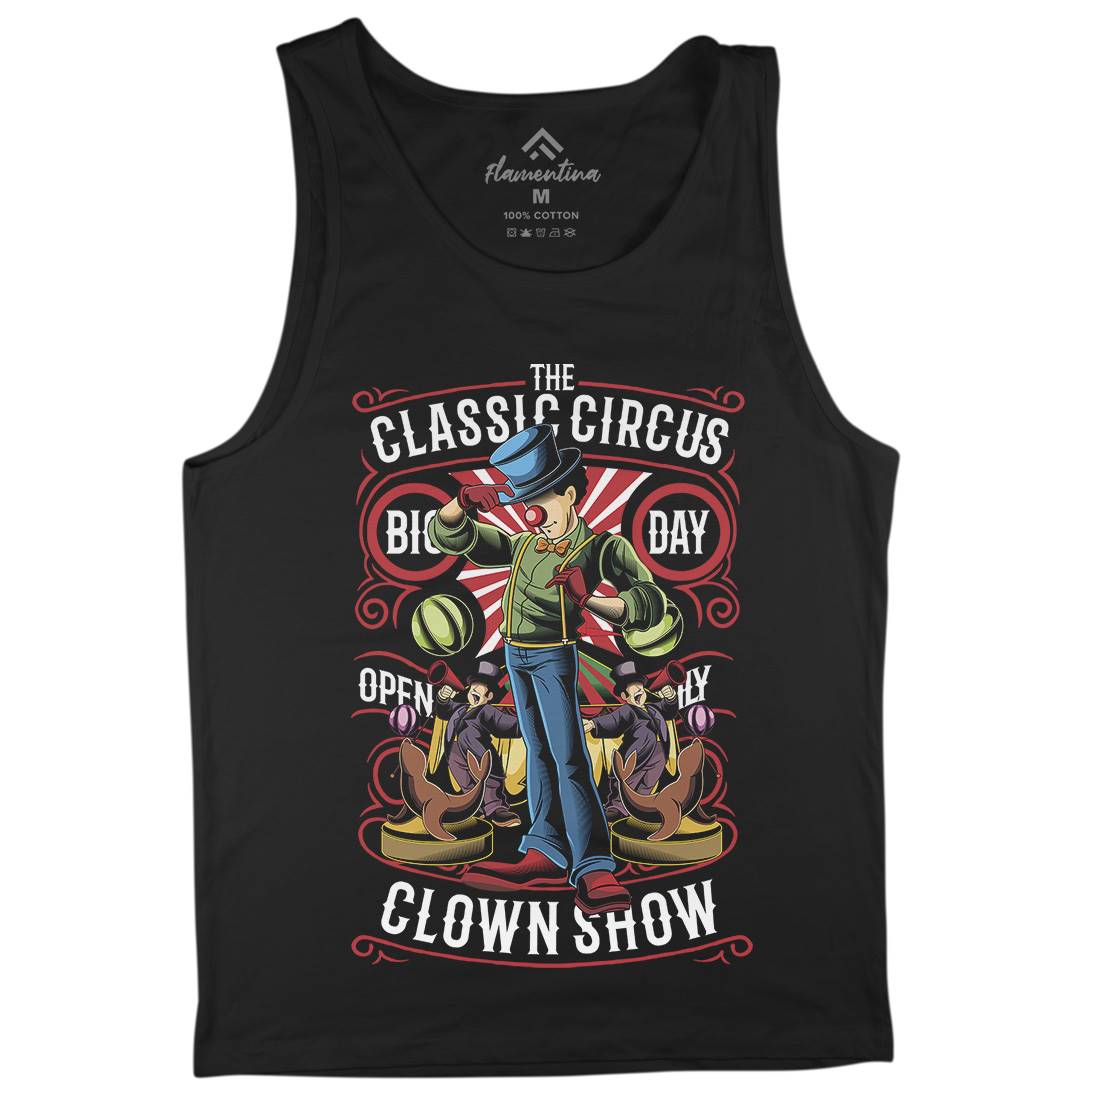 Classic Circus Mens Tank Top Vest Retro C461